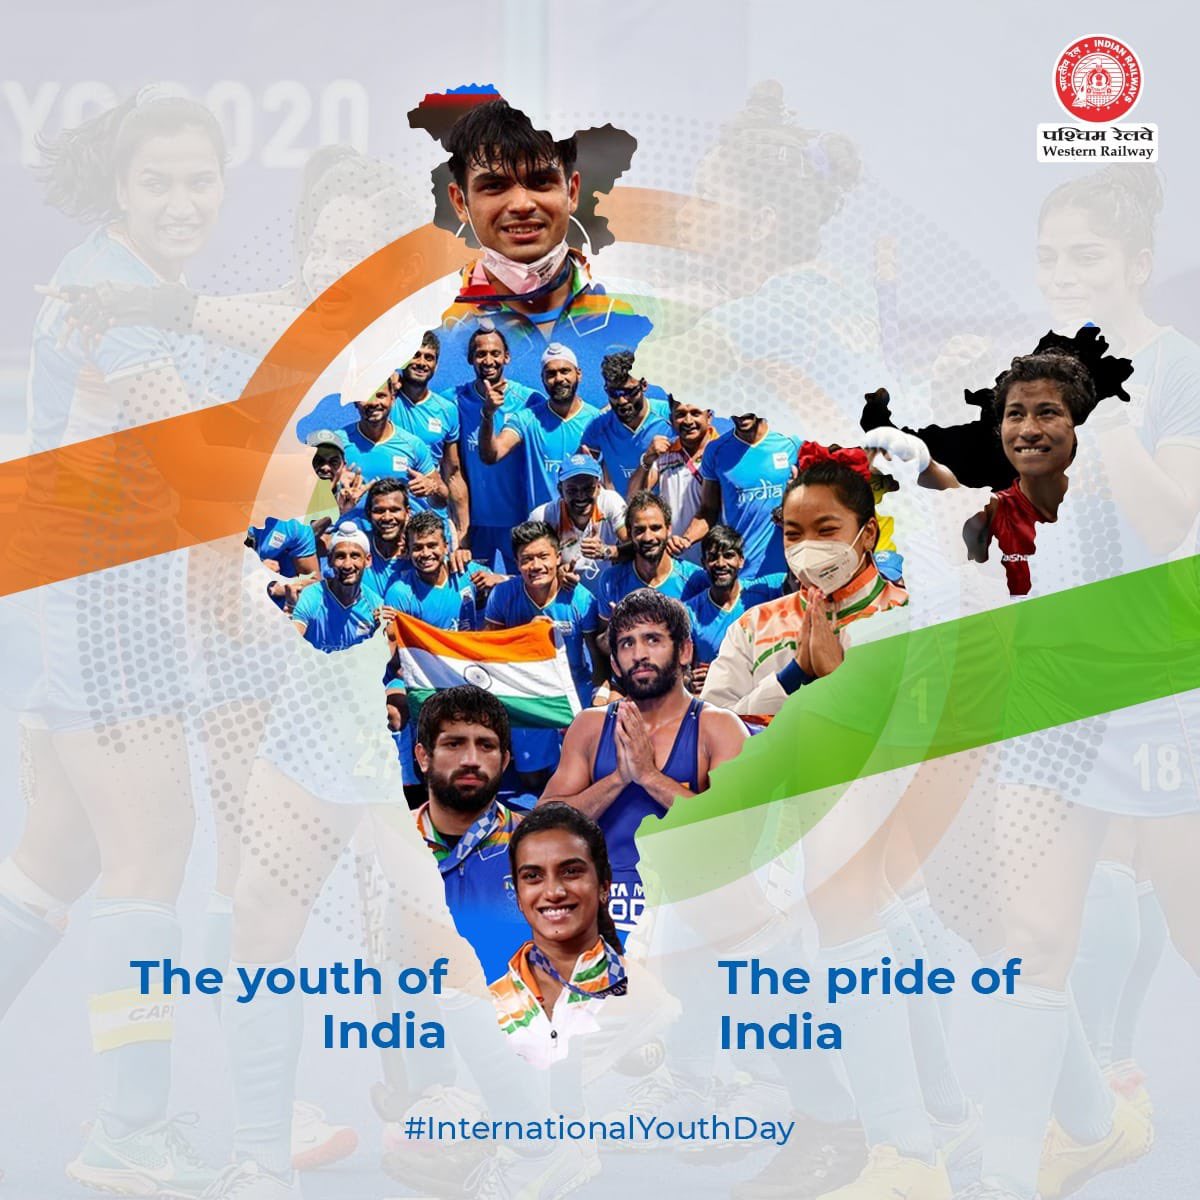 युवा, किसी भी देश के भविष्य निर्माता होते है।
भारतीय युवाओं ने हाल ही में हुए ओलंपिक खेलों में अपना सर्वश्रेष्ठ प्रदर्शन करते हुए देश को गौरवान्वित किया है।

भारतीय रेल की ओर से देश की युवा शक्ति को  #InternationalYouthDay2021 की हार्दिक शुभकामनाएं।